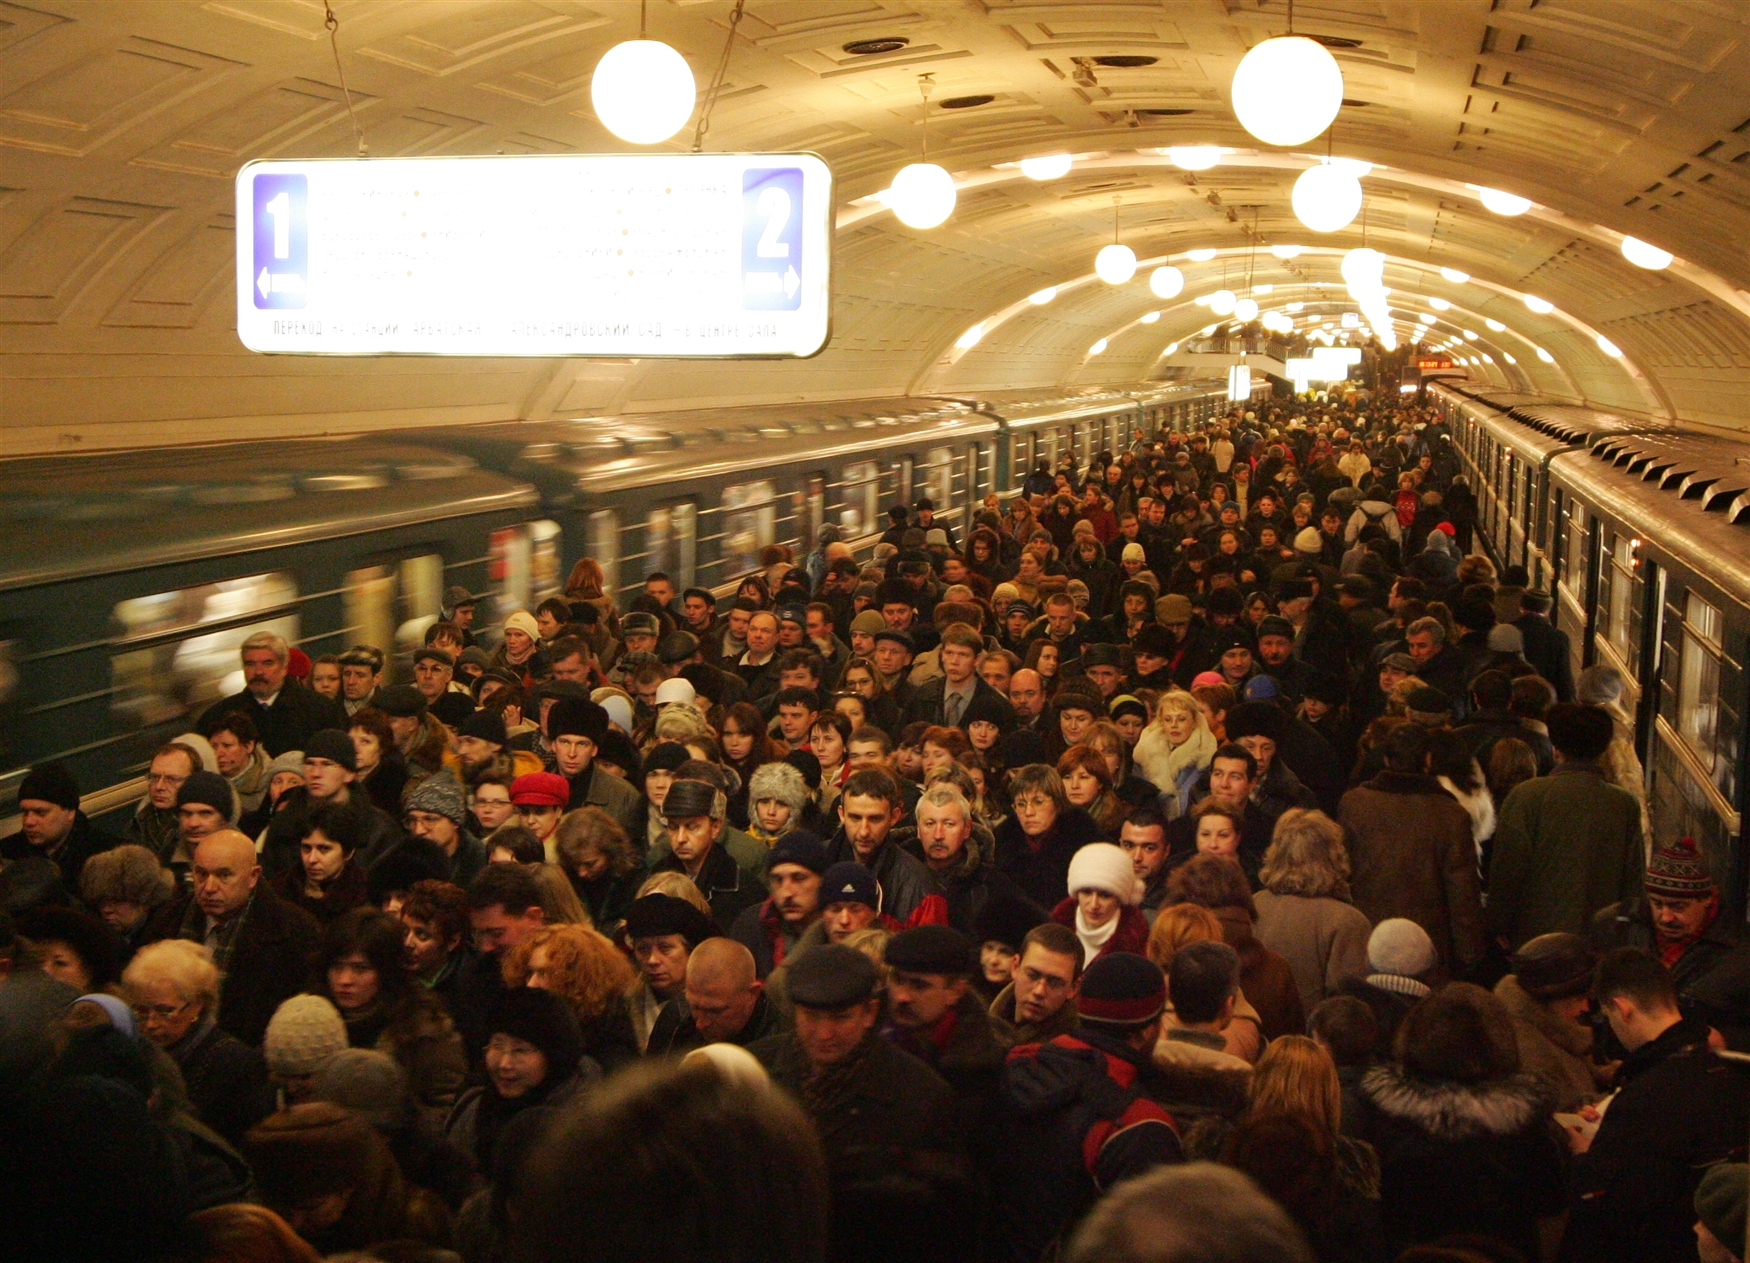 Много людей в метро. Час пик в метро в Москве. Библиотека Ленина метро давка. Московское метро в час пик 2021. Люди в метро в час пик.